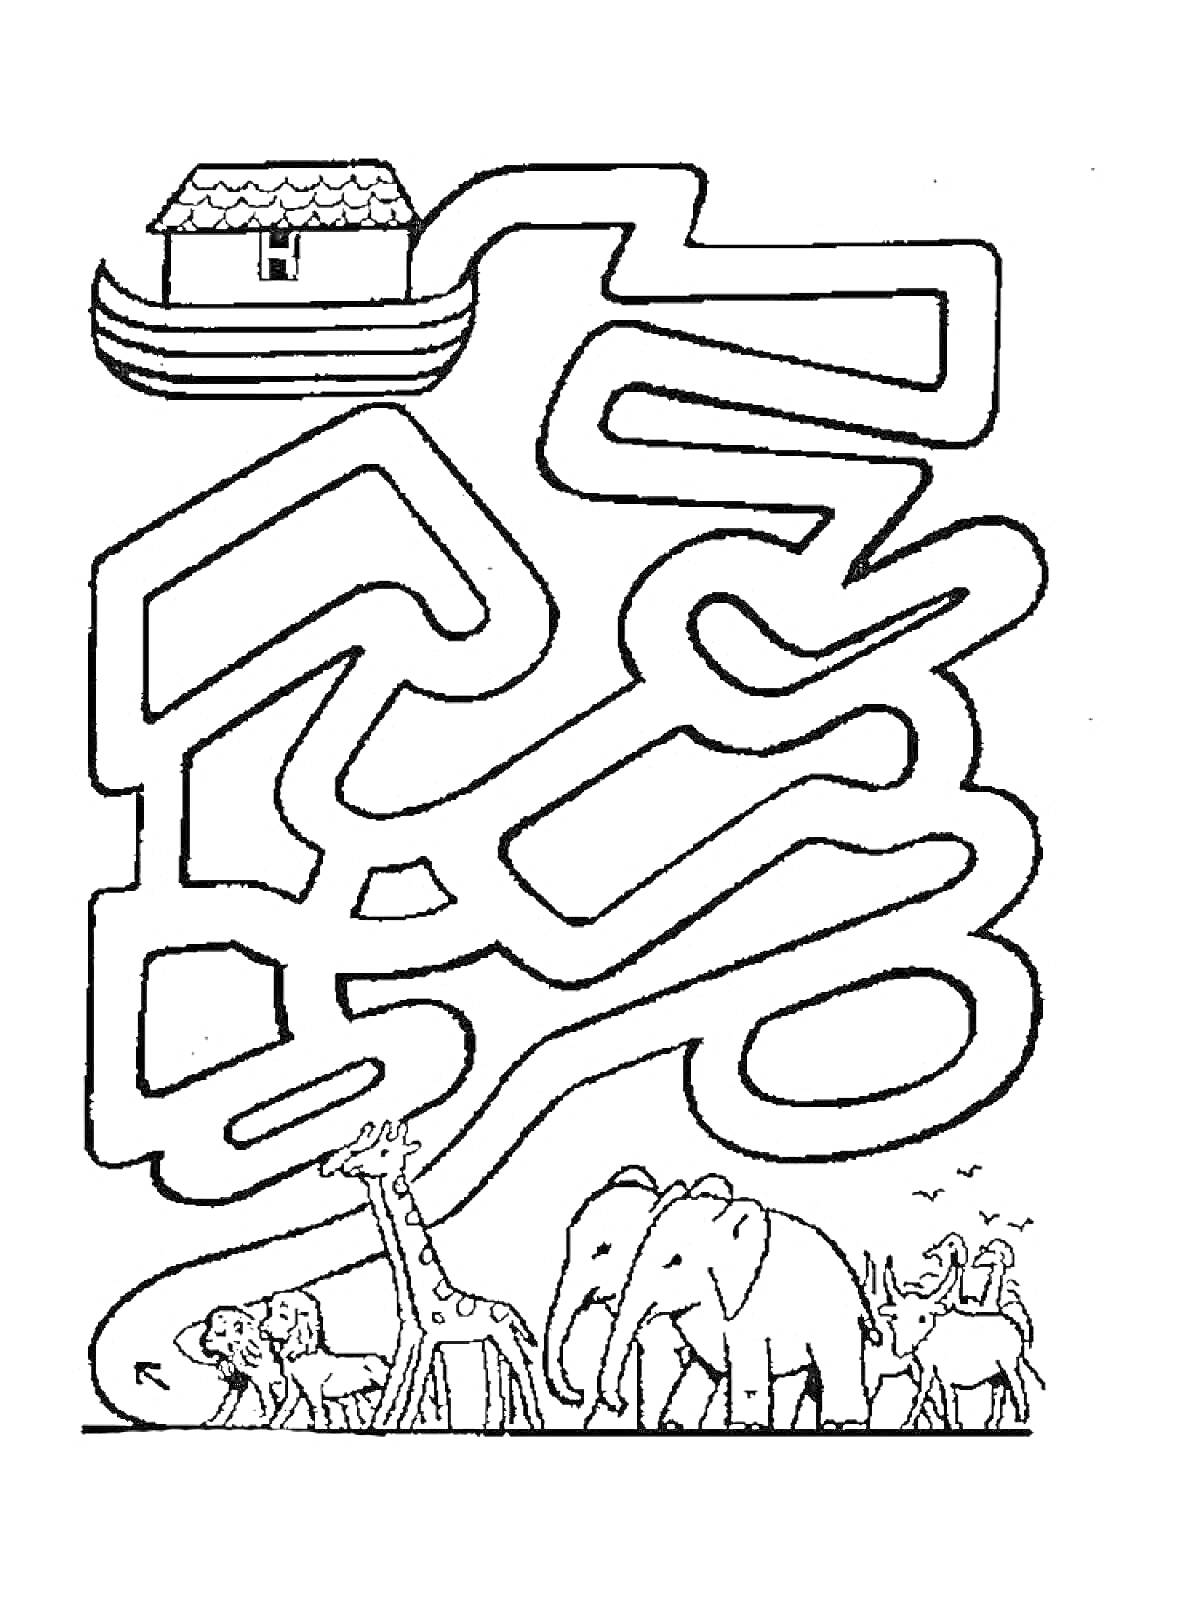 Раскраска Лабиринт с ковчегом и животными (Ной, жираф, слон, лев и другие)